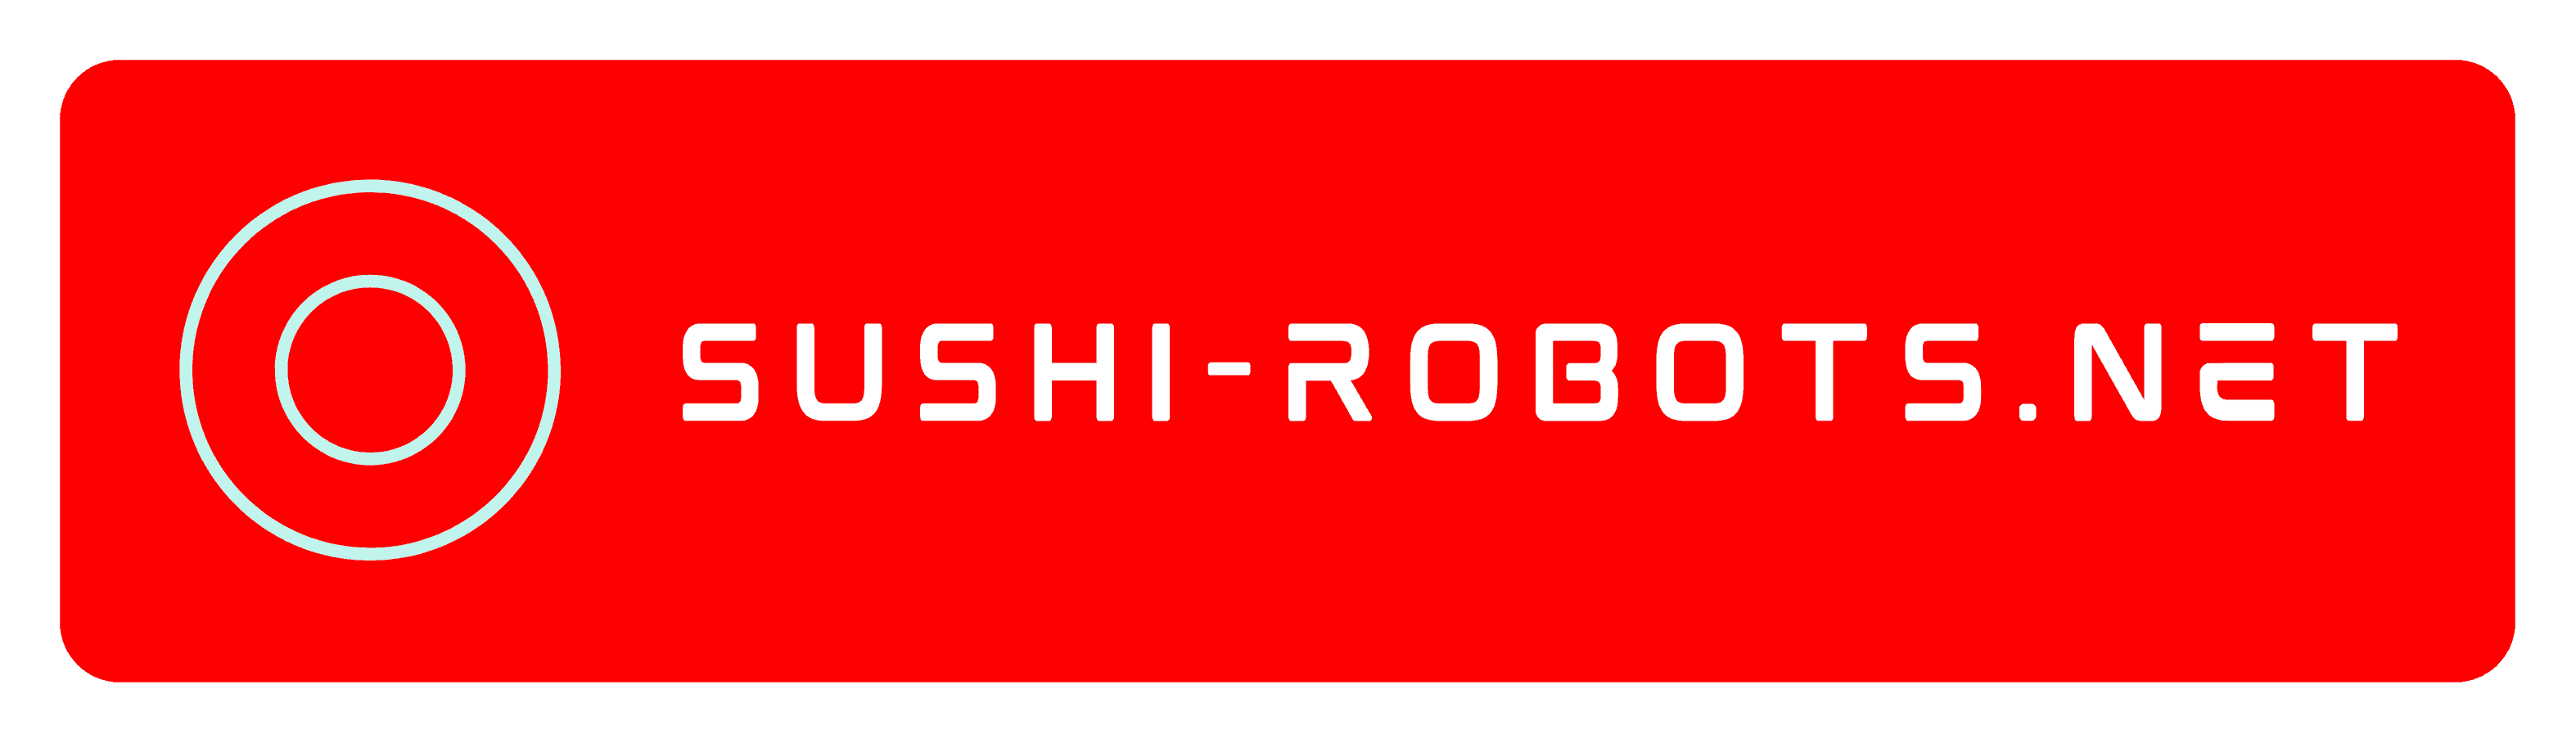 sushi robots